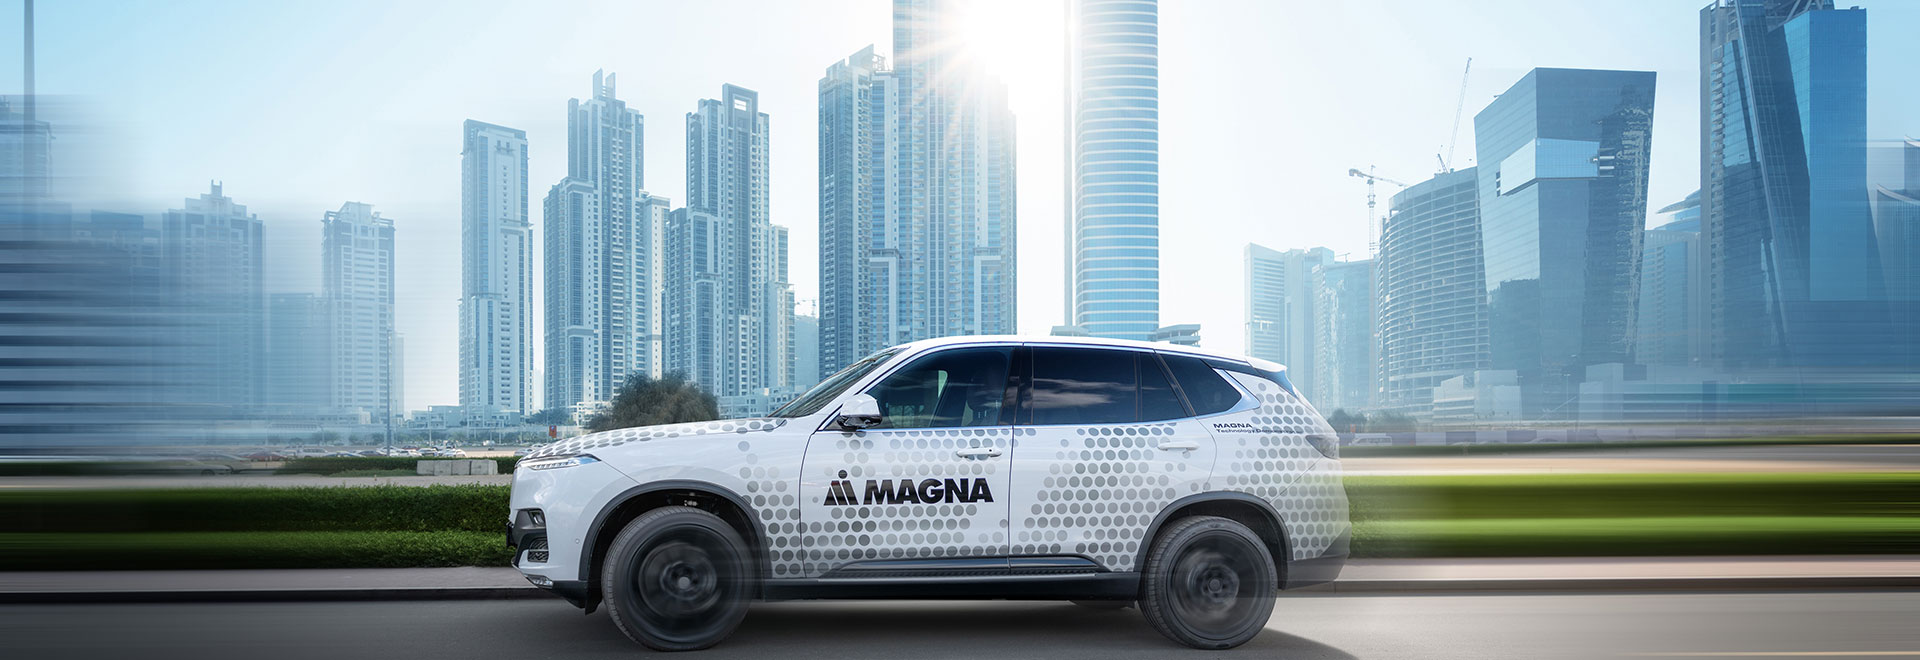 Magna Car is driving through a city